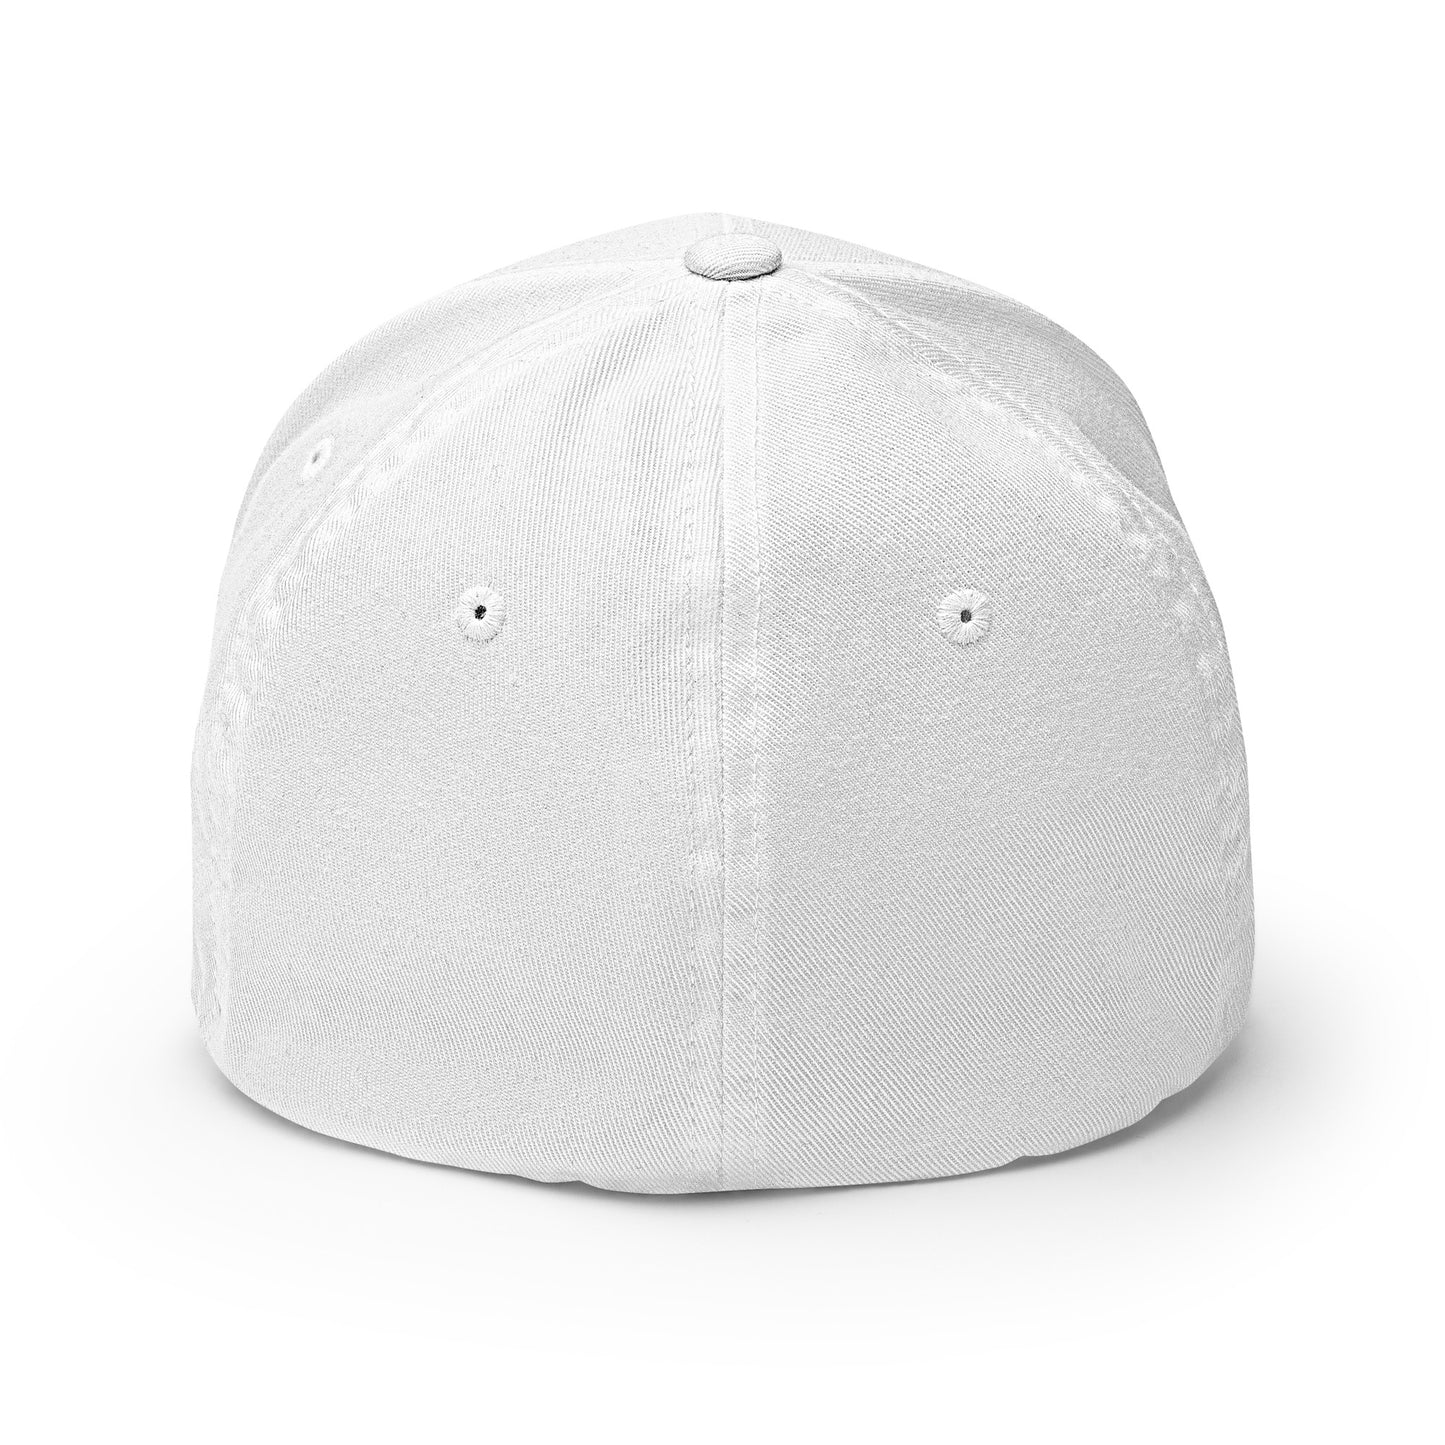 Baseball Cap with Grenade Symbol